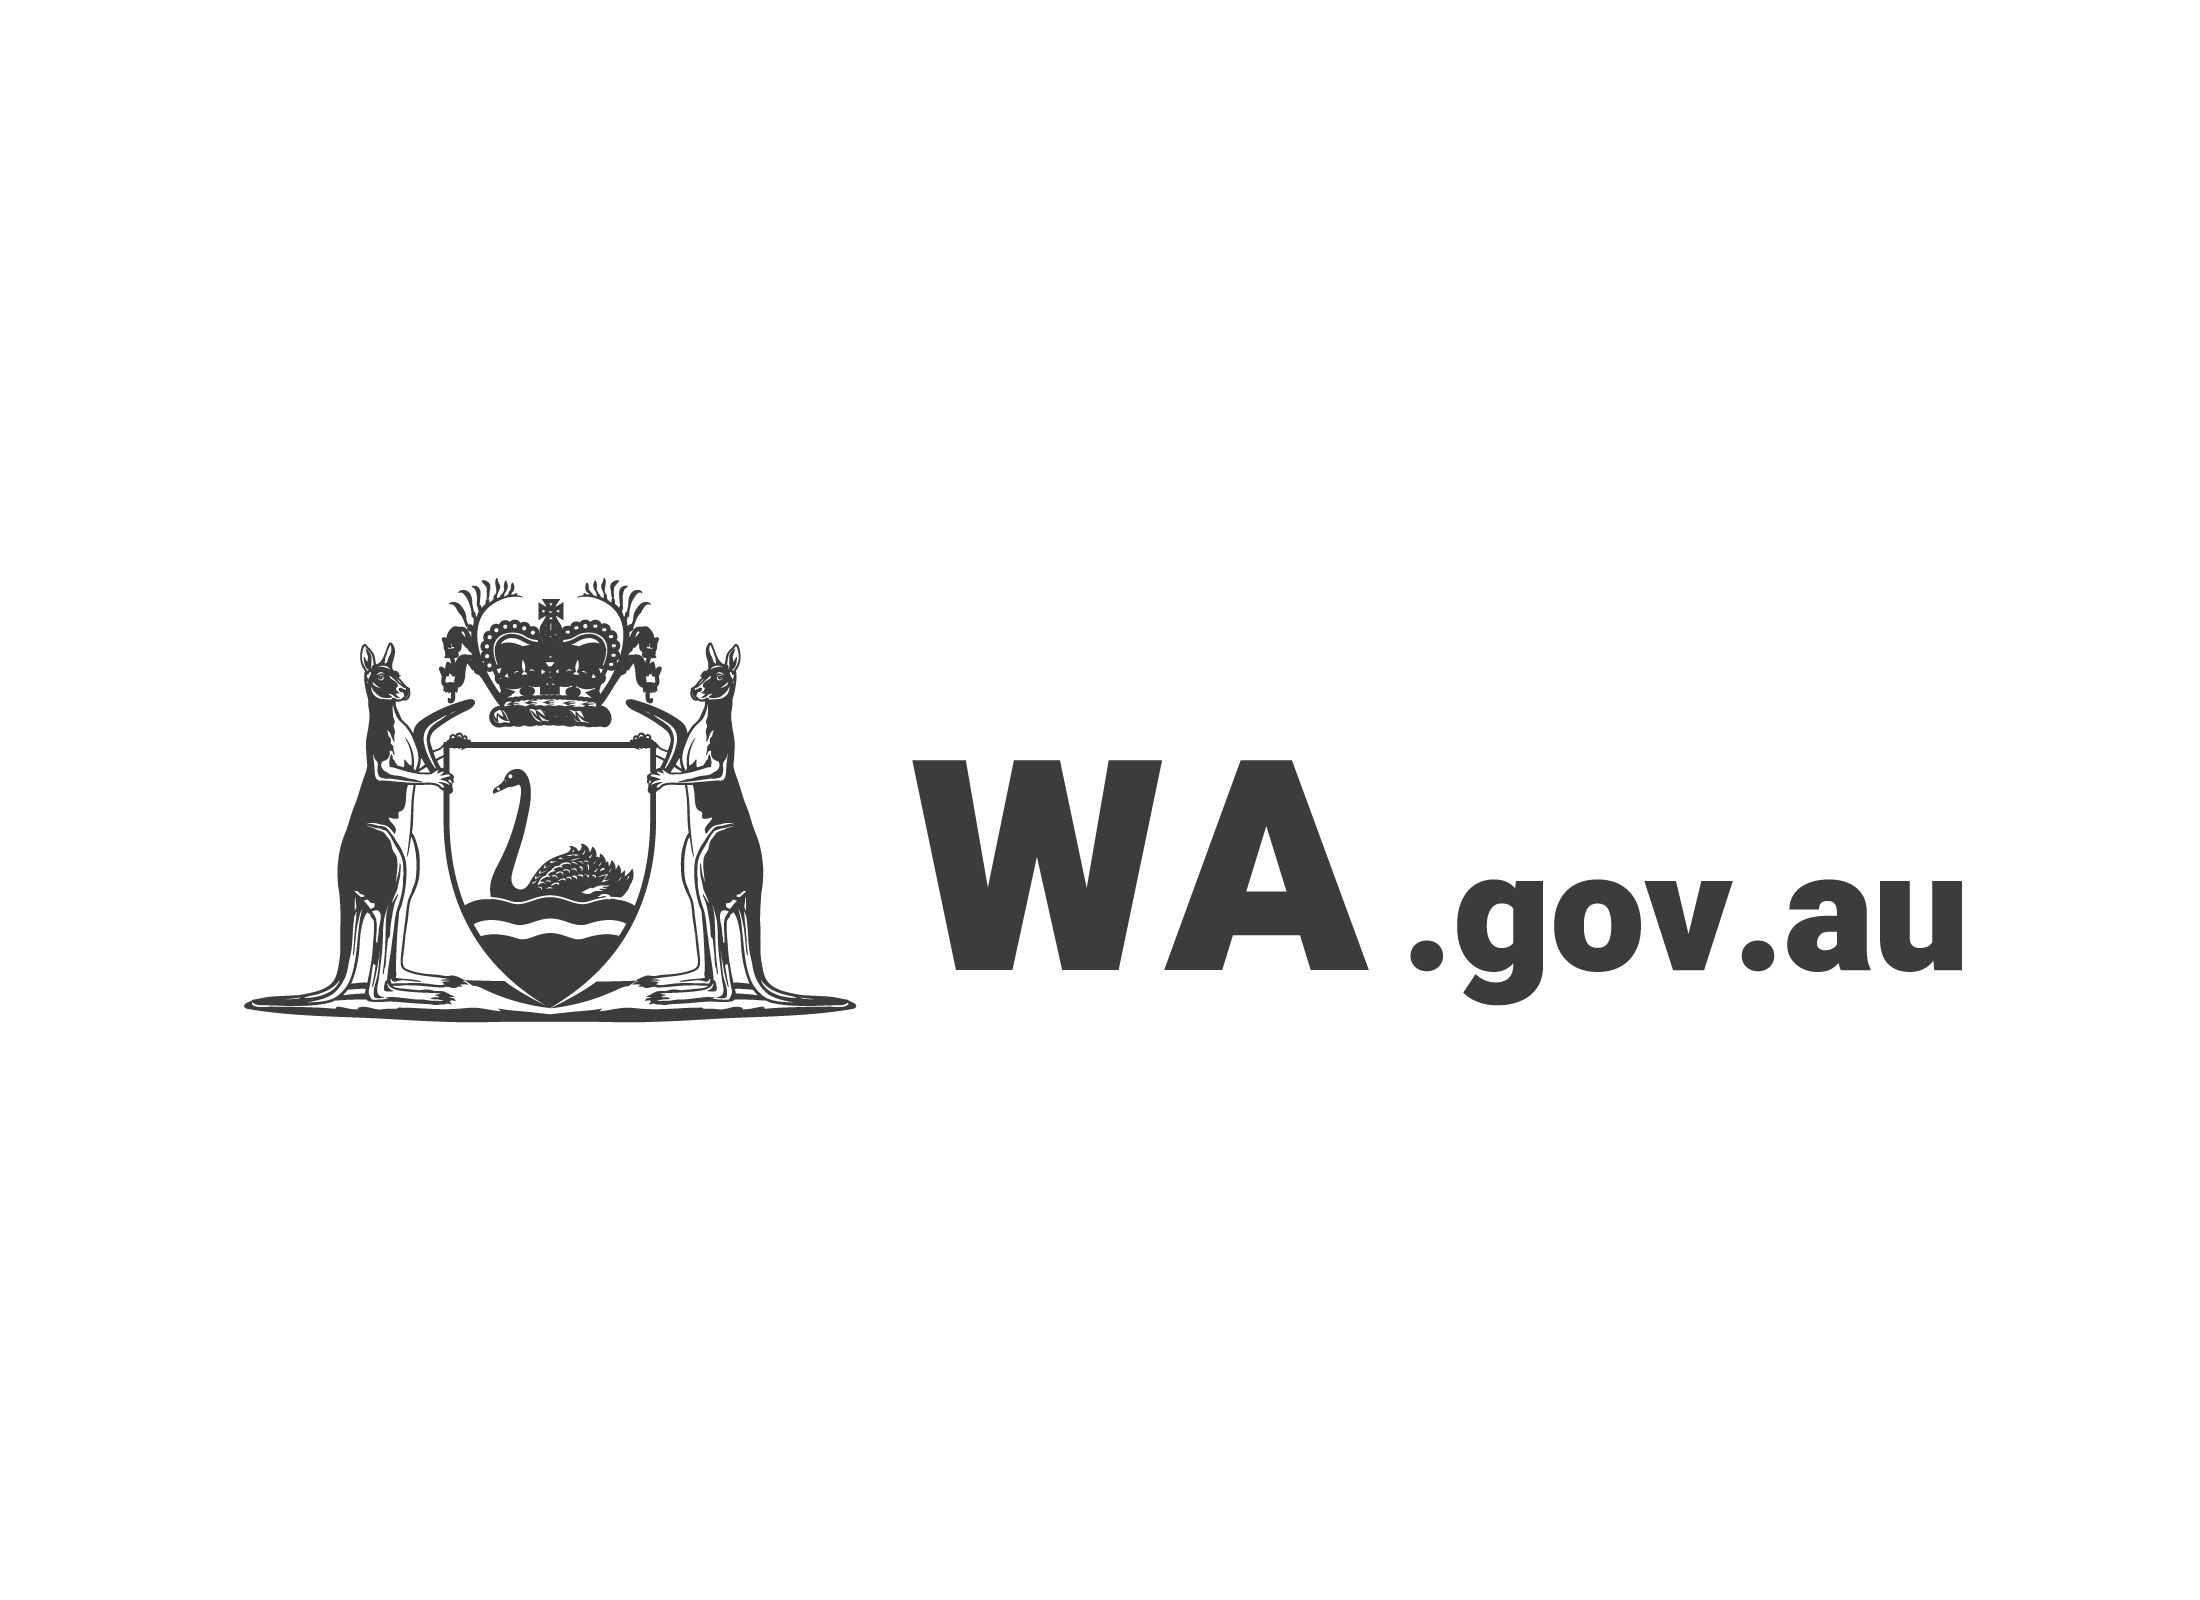 Trang mạng của chính phủ Tây Úc